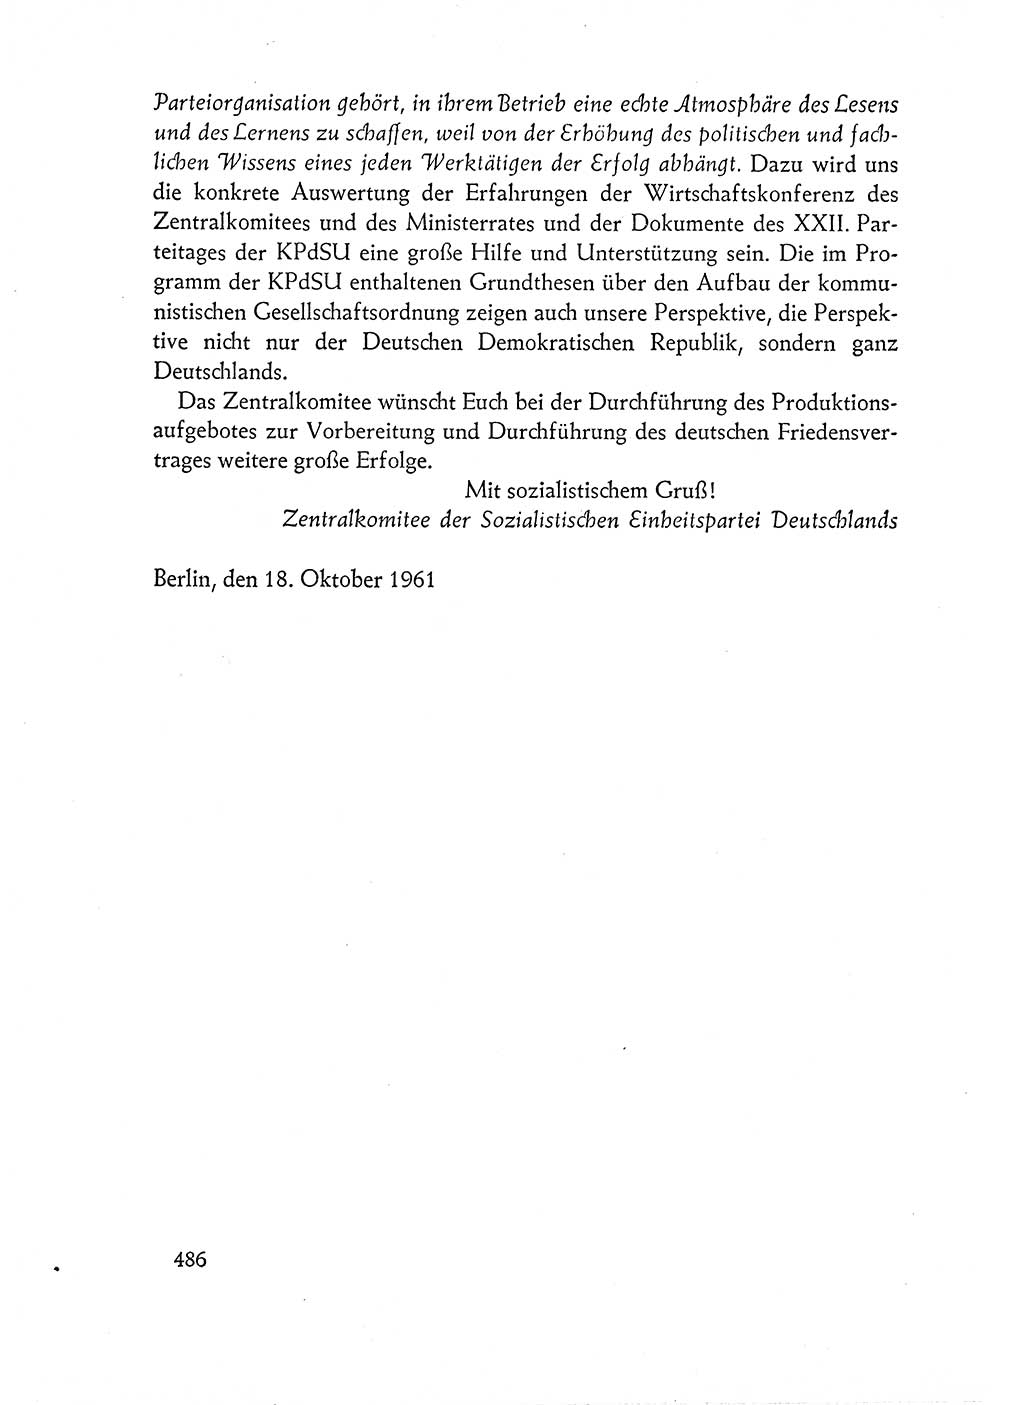 Dokumente der Sozialistischen Einheitspartei Deutschlands (SED) [Deutsche Demokratische Republik (DDR)] 1960-1961, Seite 486 (Dok. SED DDR 1960-1961, S. 486)